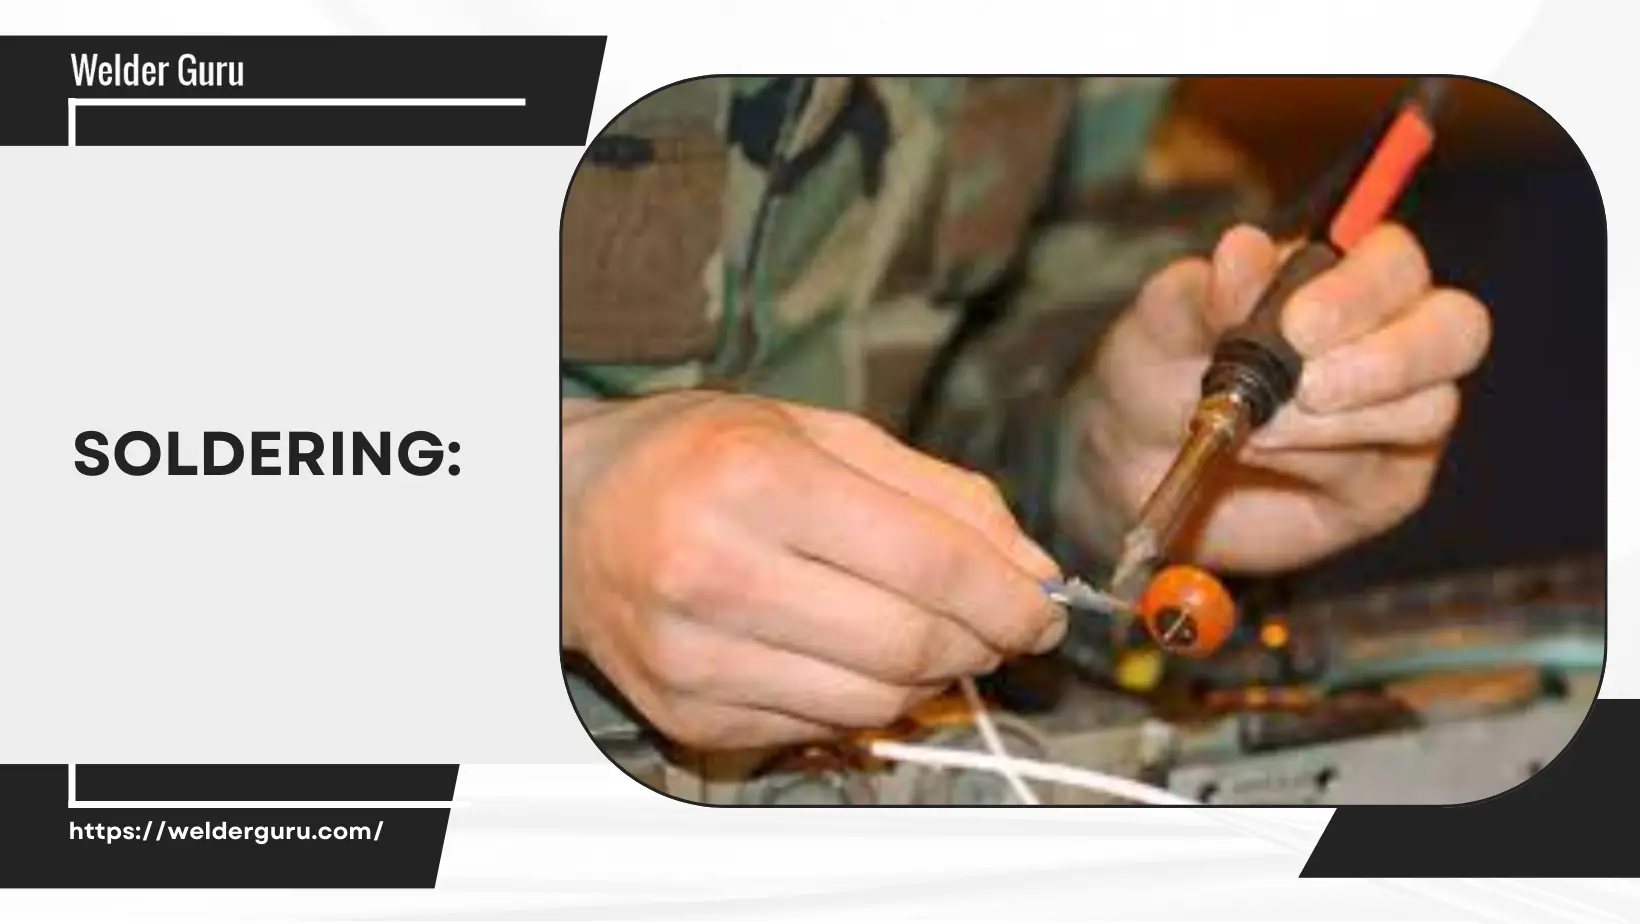 Welding vs. soldering vs. brazing: